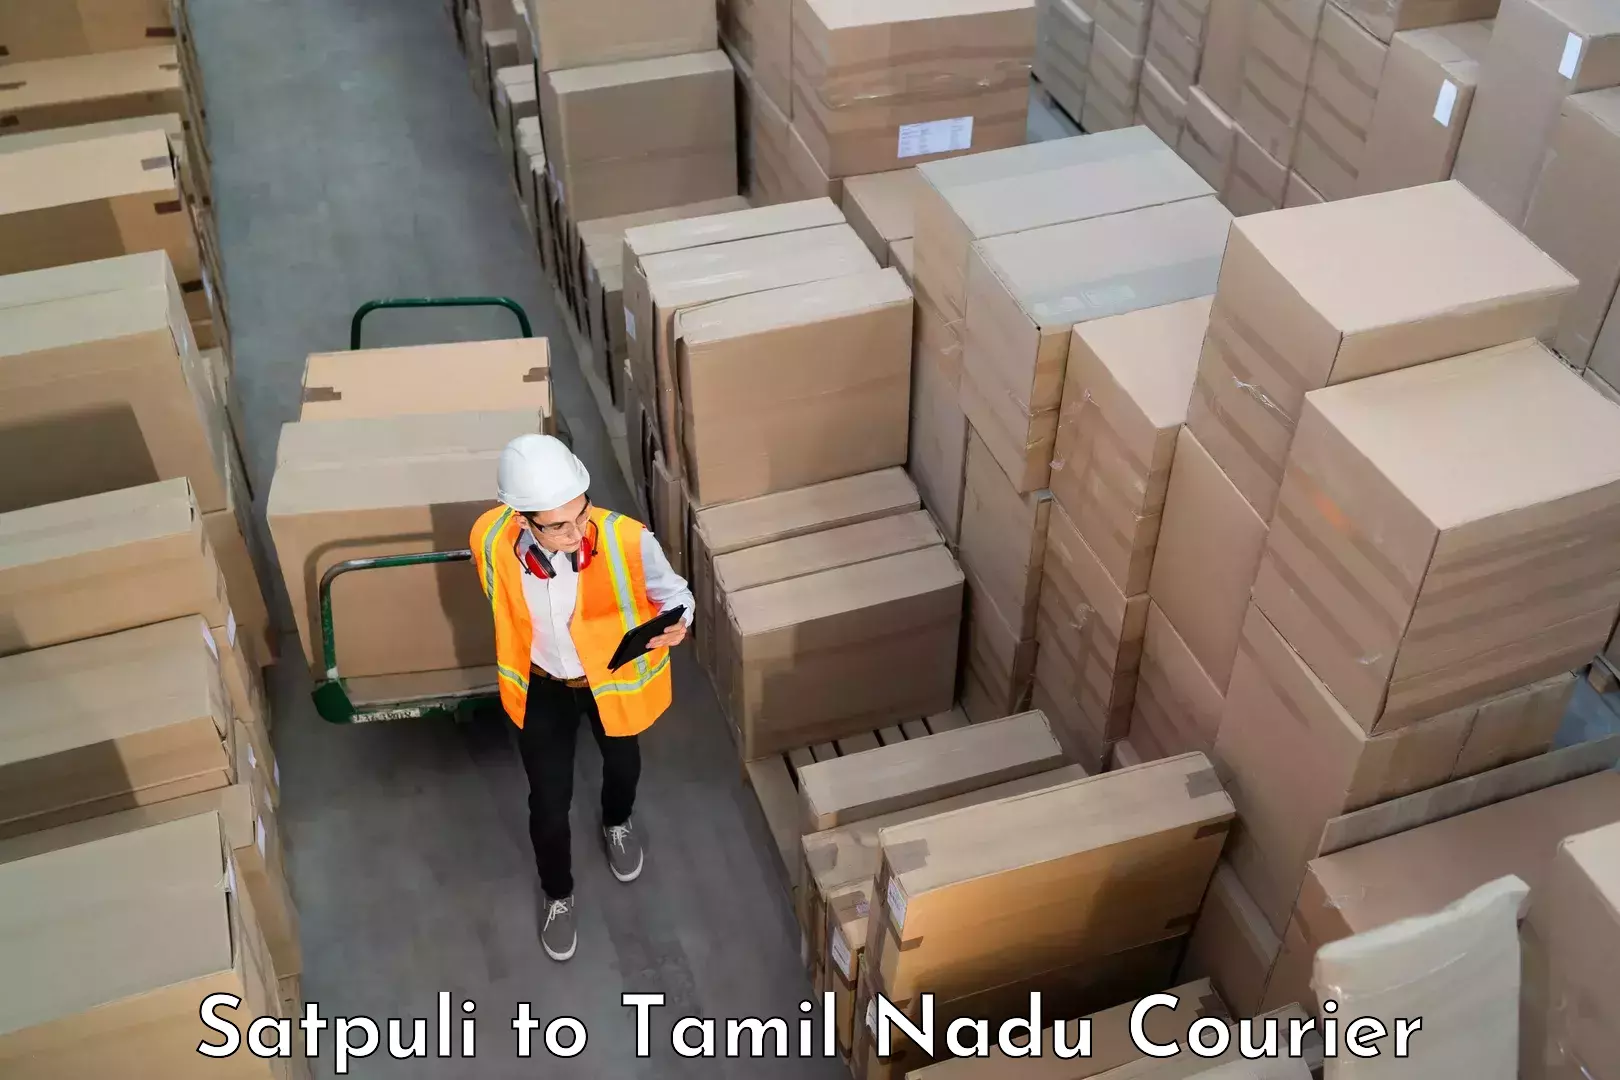 Luggage transport operations Satpuli to Tamil Nadu